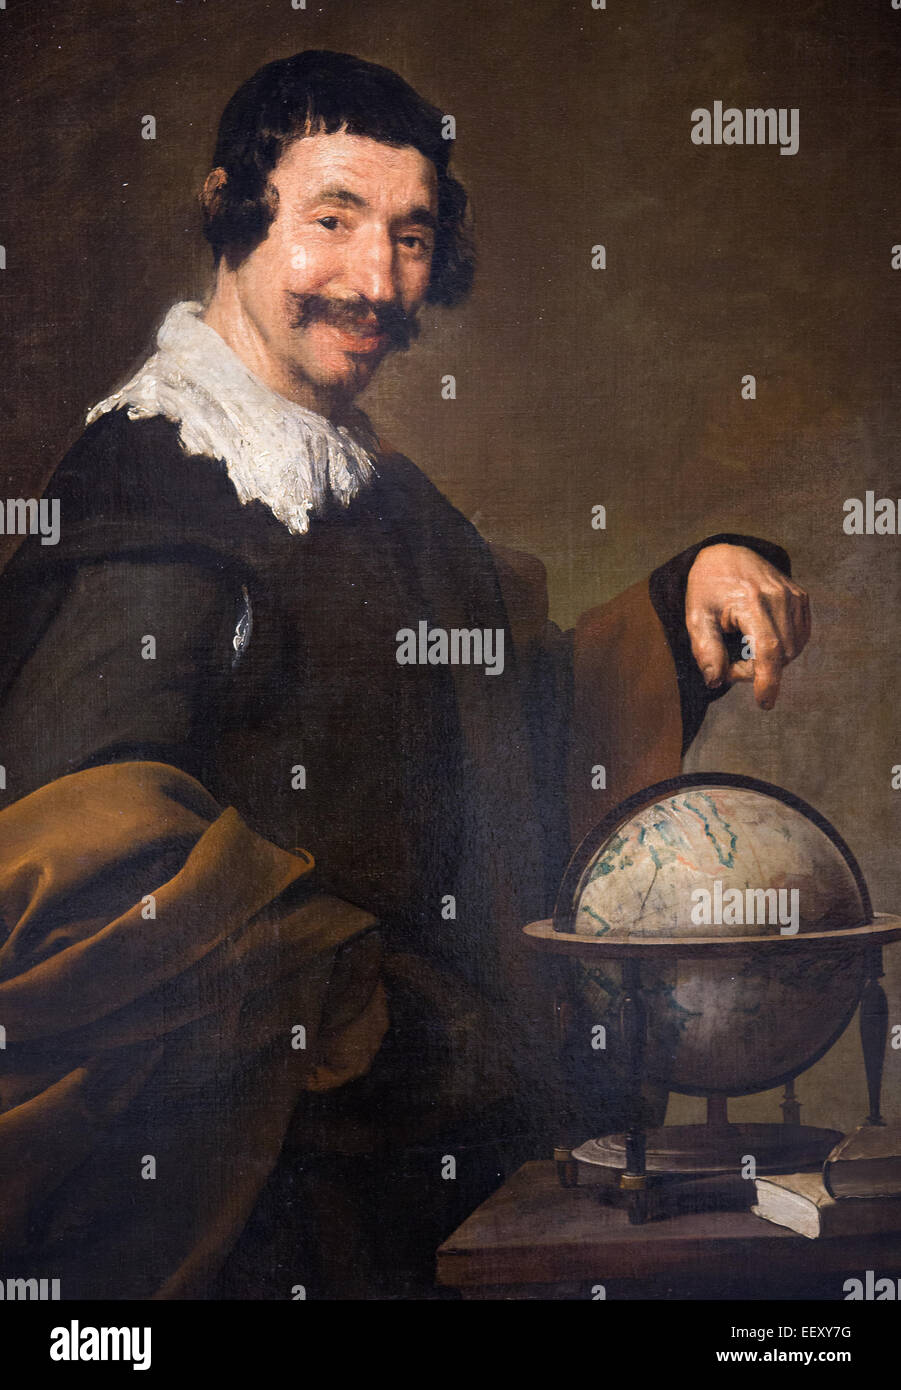 Démocrite, un pré-grec ancien philosophe socratique, peint par Diego Velazquez en 1640 Banque D'Images